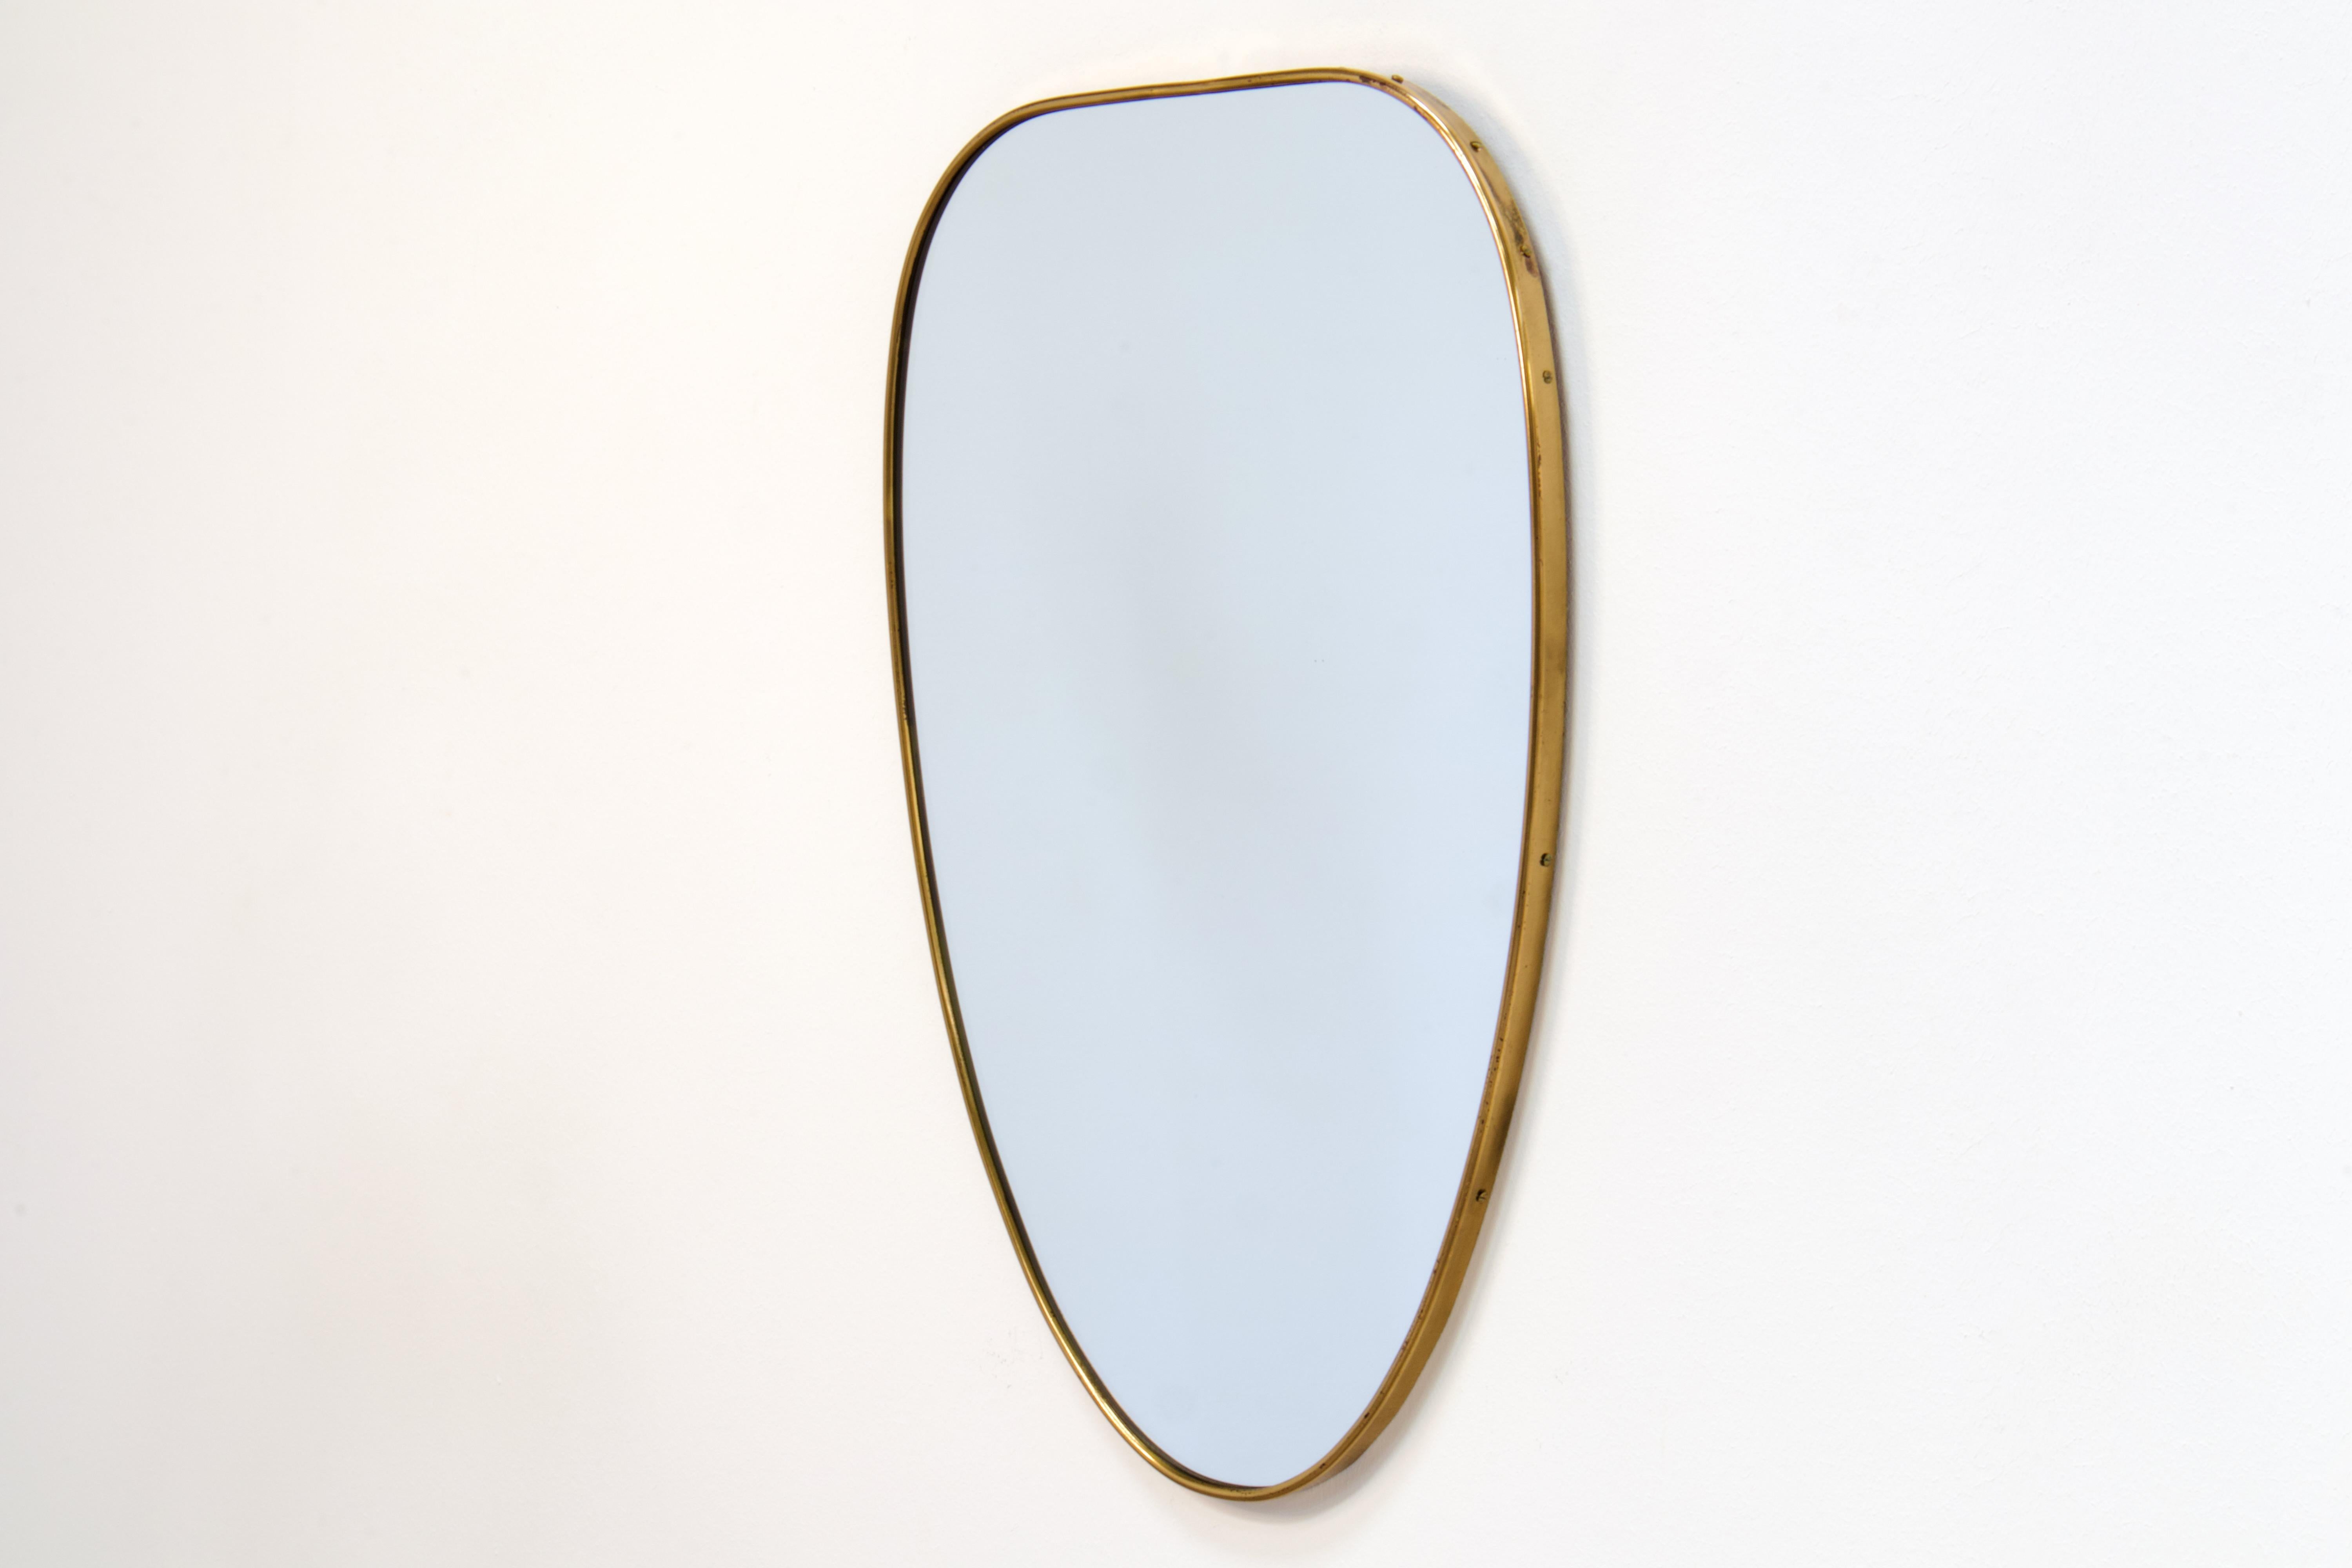 Miroir mural en laiton patiné d'époque Gio Ponti. Fabriqué en Italie dans les années 1950.

La forme du miroir est un ovale très élégant aux angles arrondis et à la belle conicité. La partie supérieure est plus large et se rétrécit jusqu'à la partie